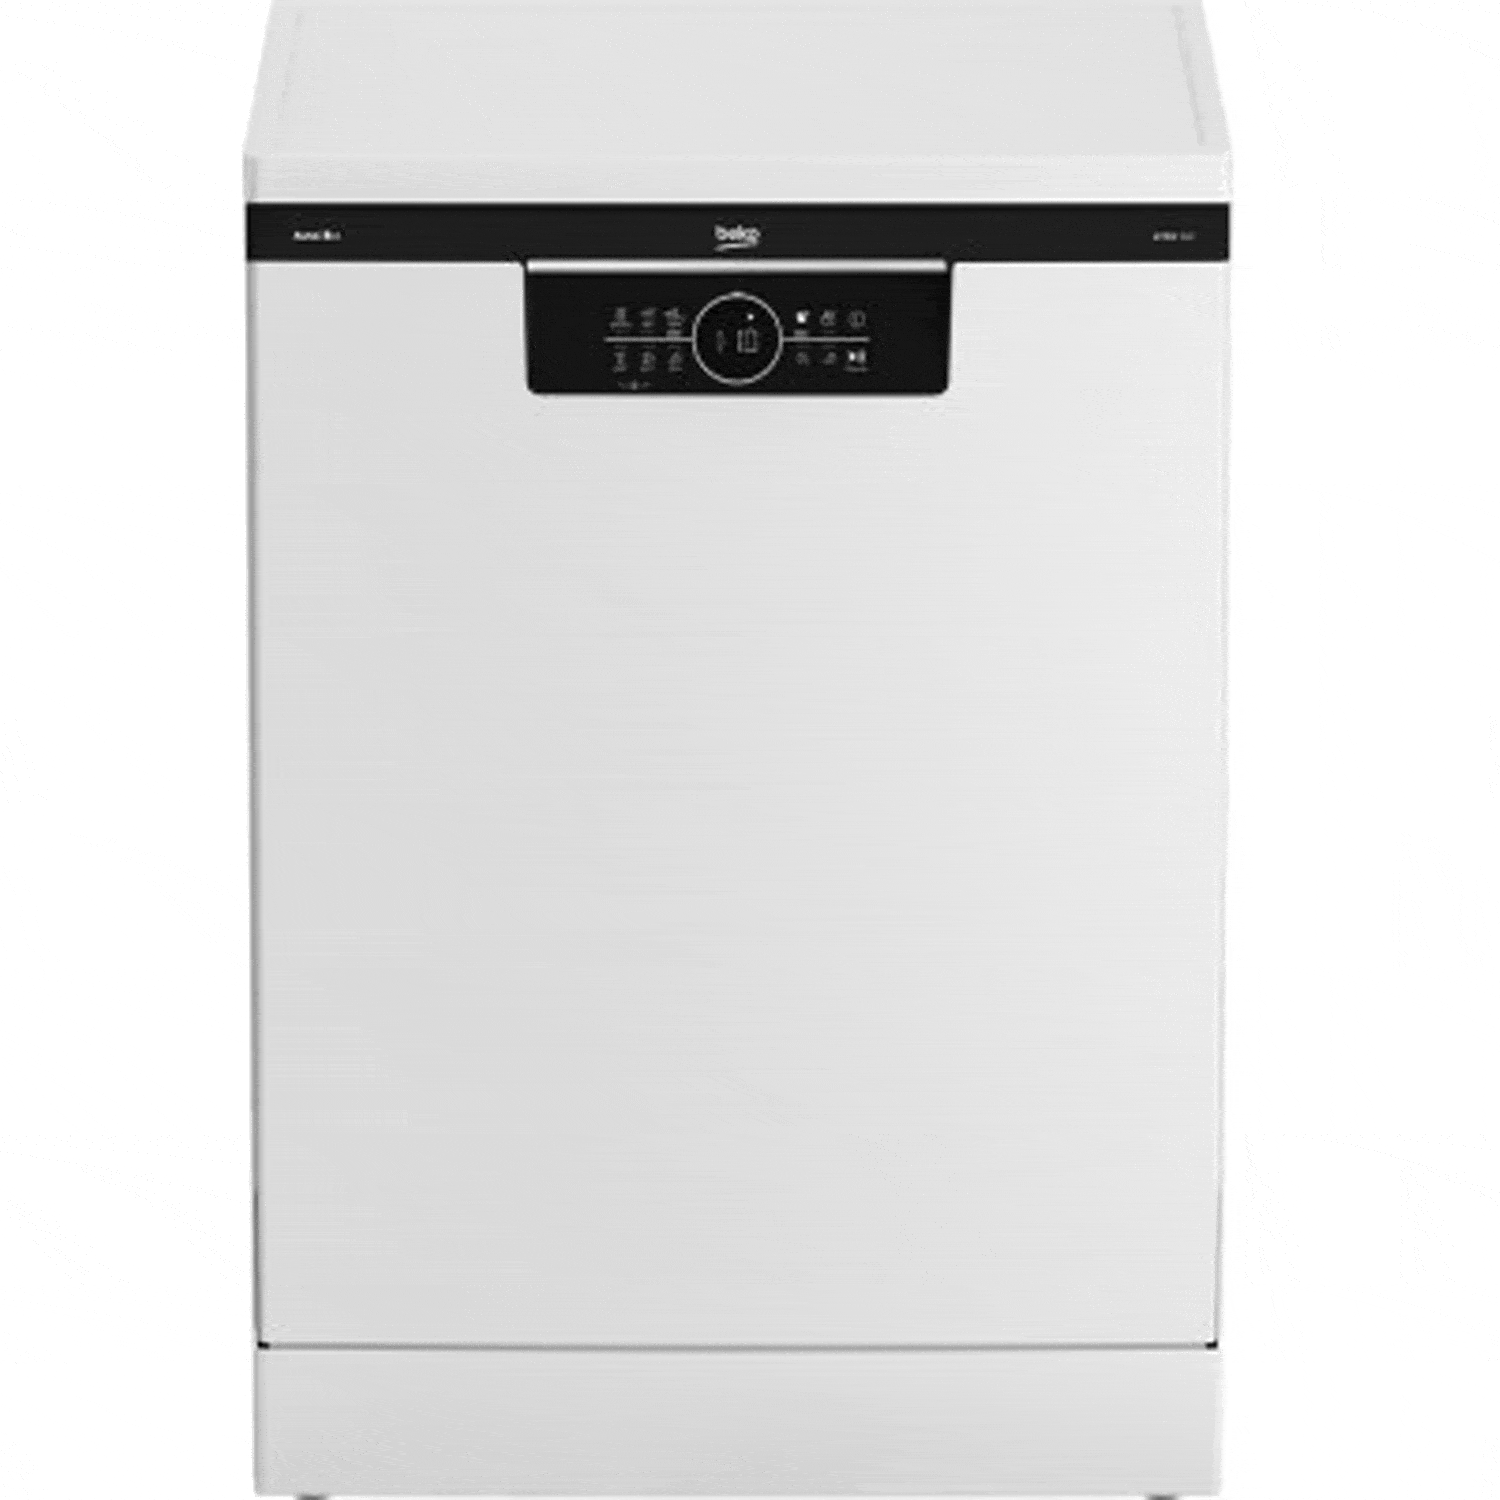 ماشین ظرفشویی 15 نفره بکو مدل BDFN 36641 - وب سایت رسمی بکو